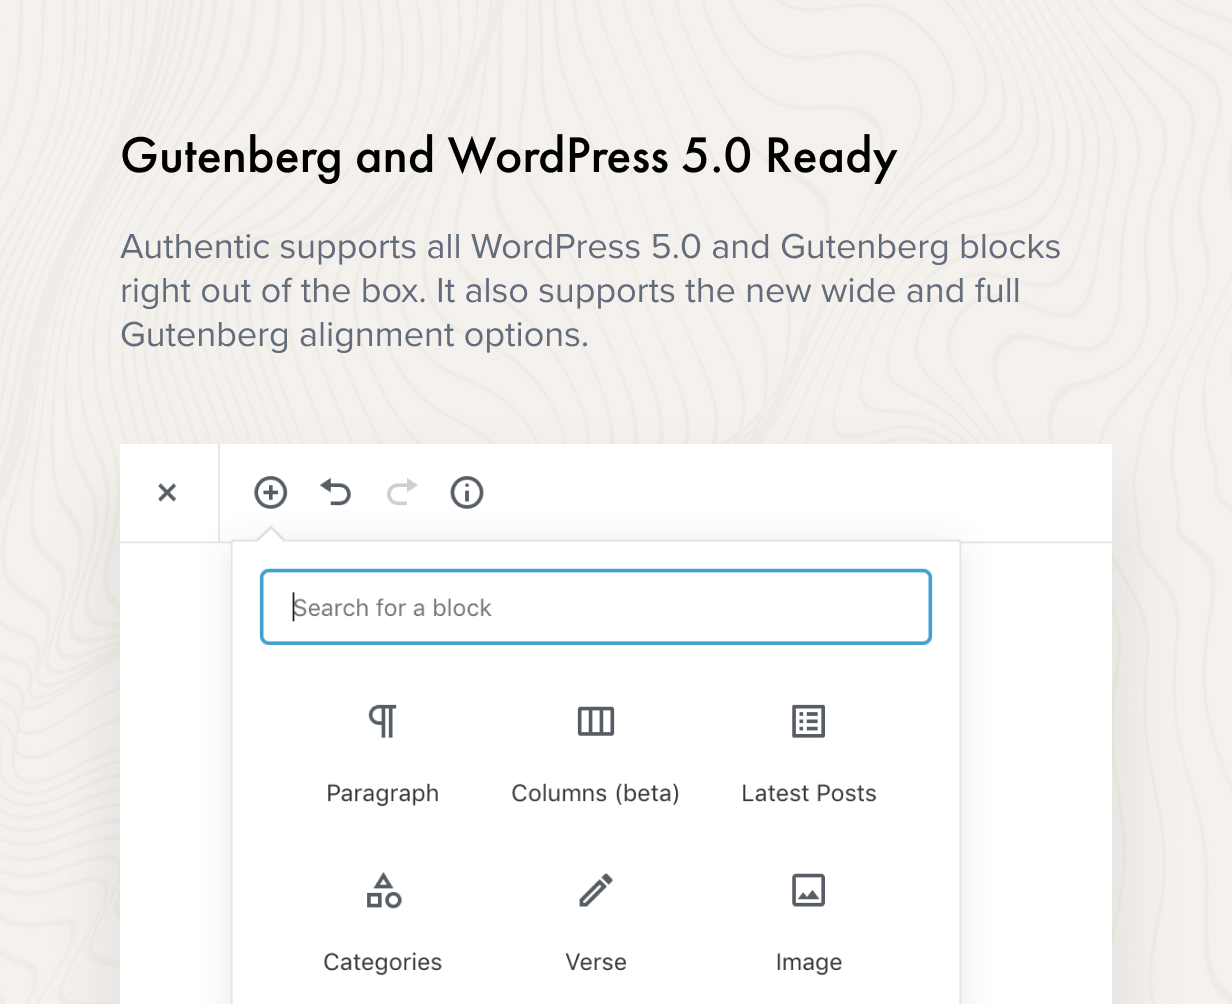 Gutenberg and WordPress 5.0 Ready